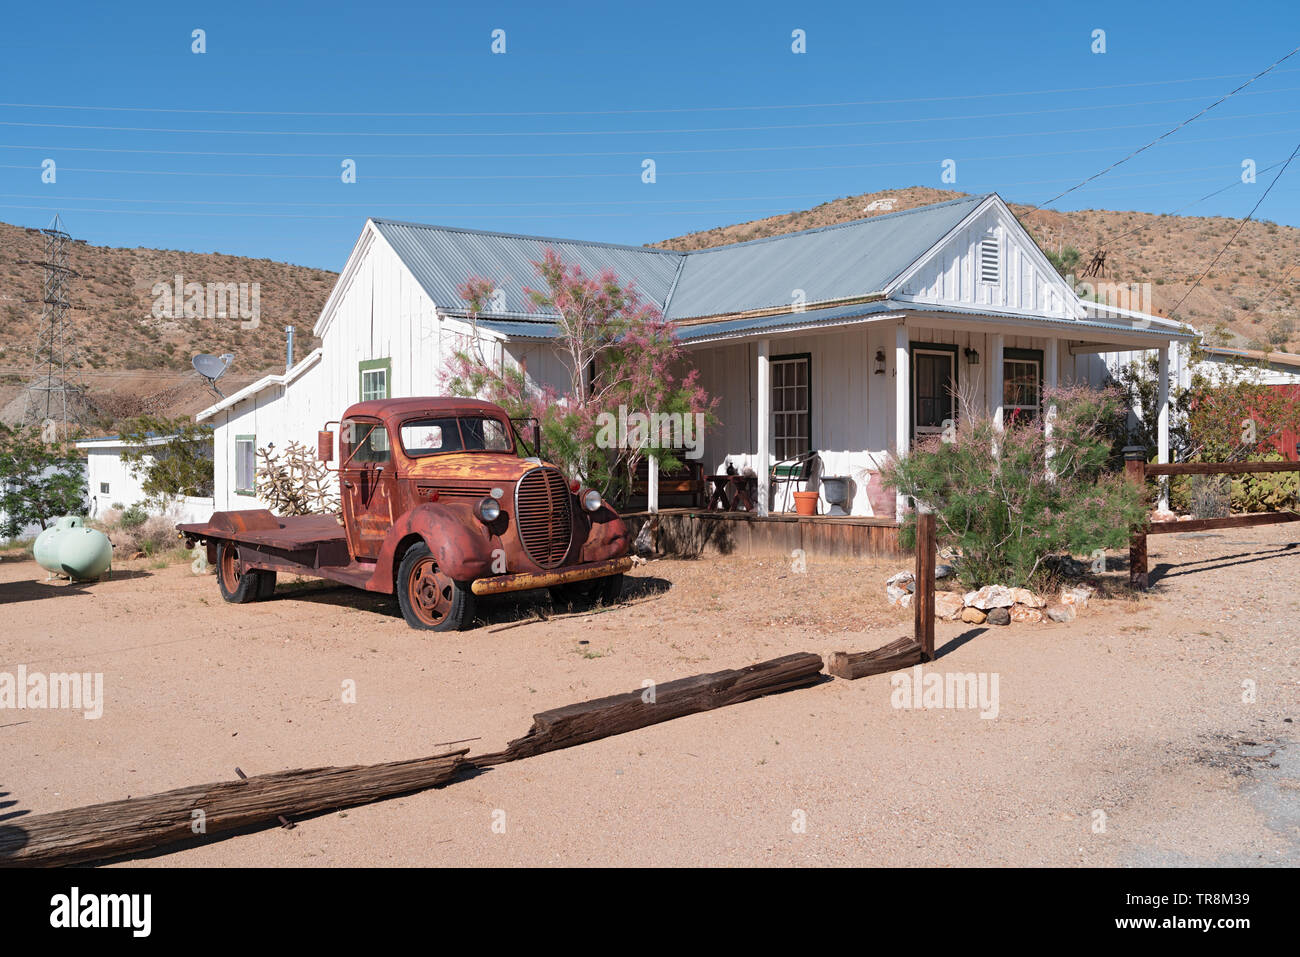 Une maison rurale et un camion abandonné montrés dans le désert de Mojave. Banque D'Images